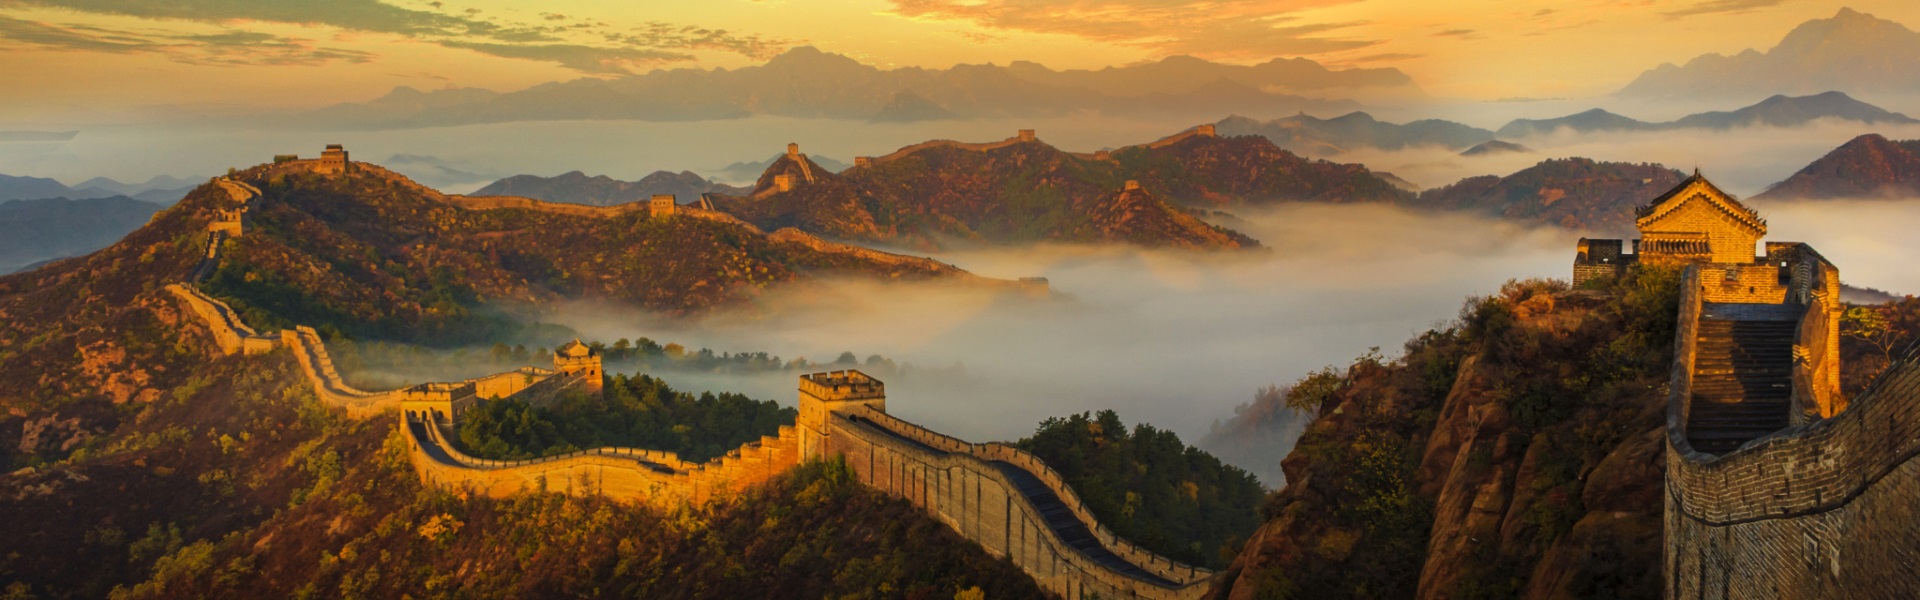 La (seconda) Grande Muraglia Cinese